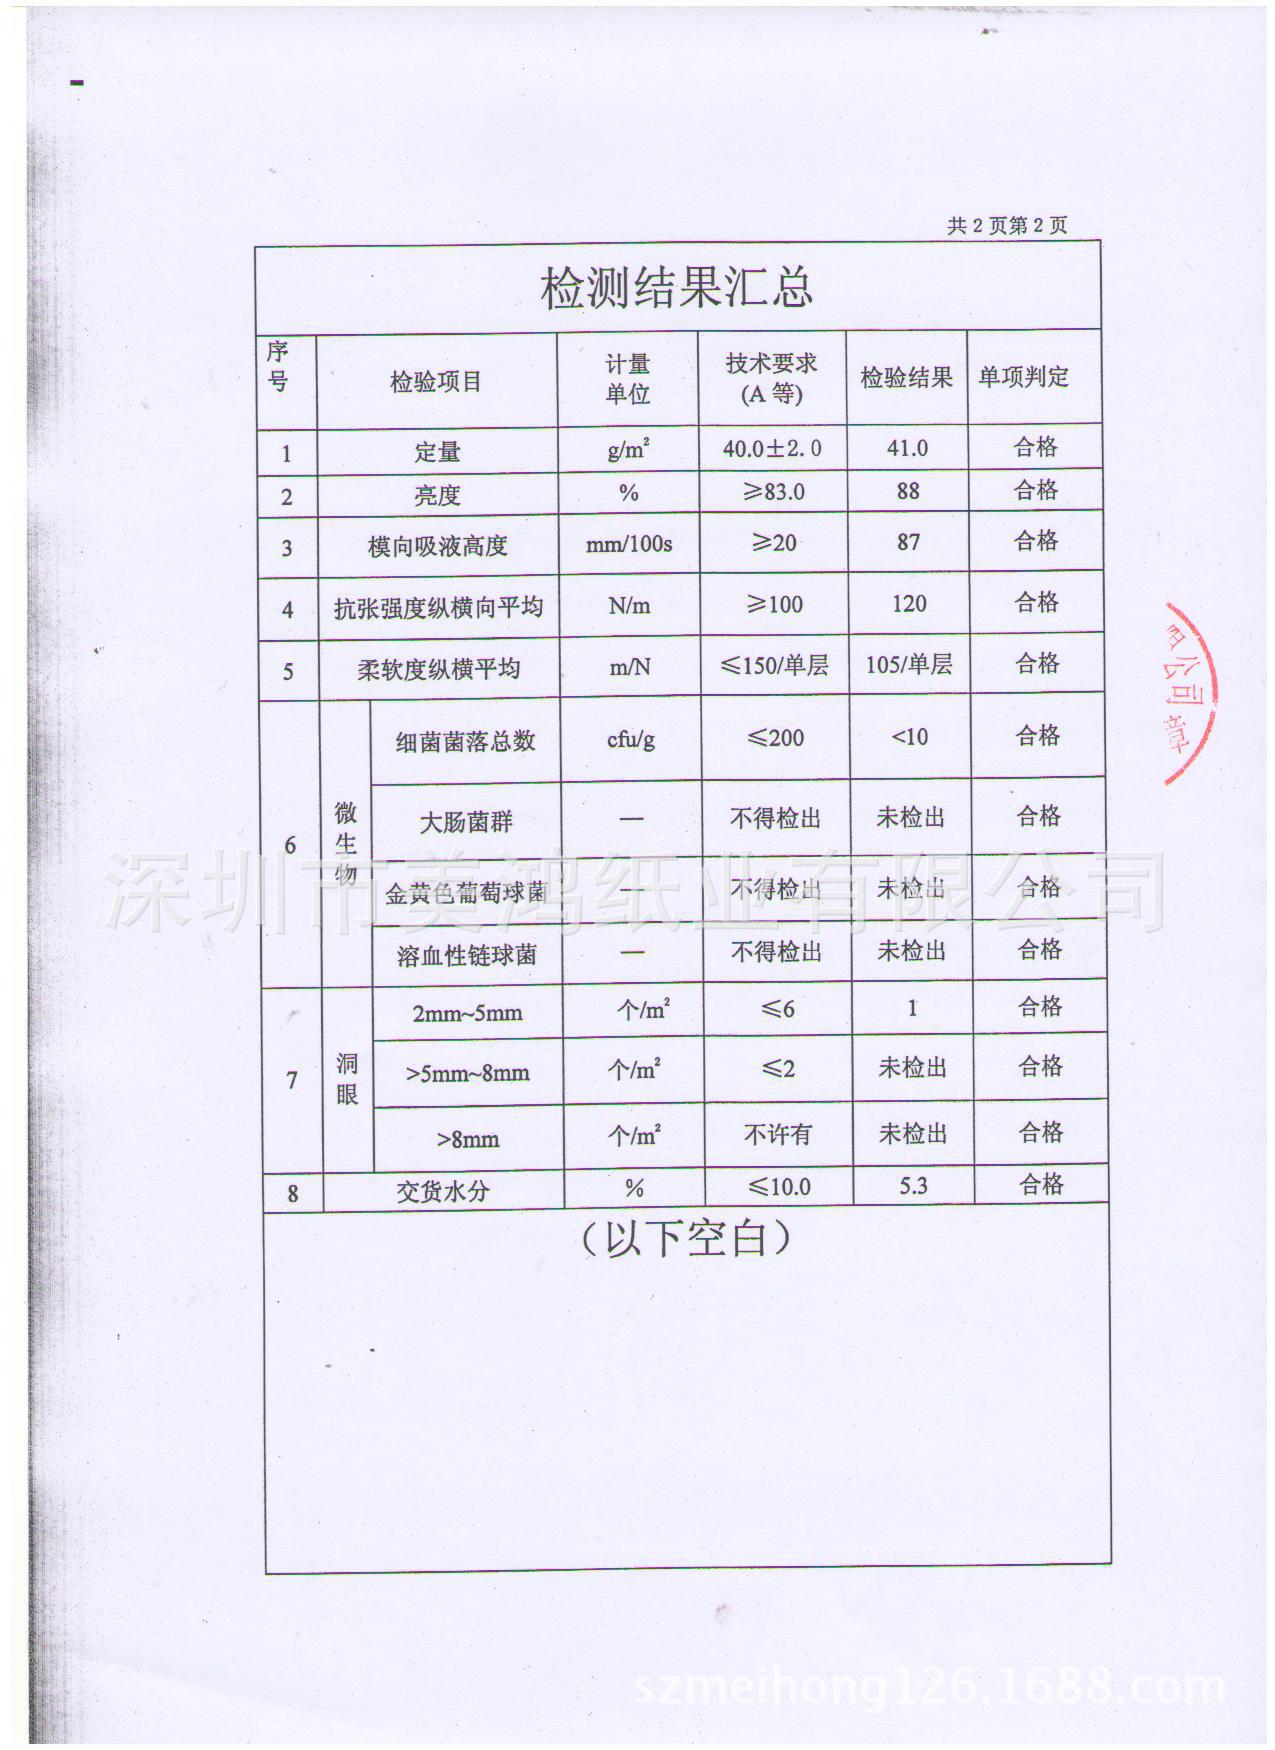 抹手纸检测报告2013-6-24 002